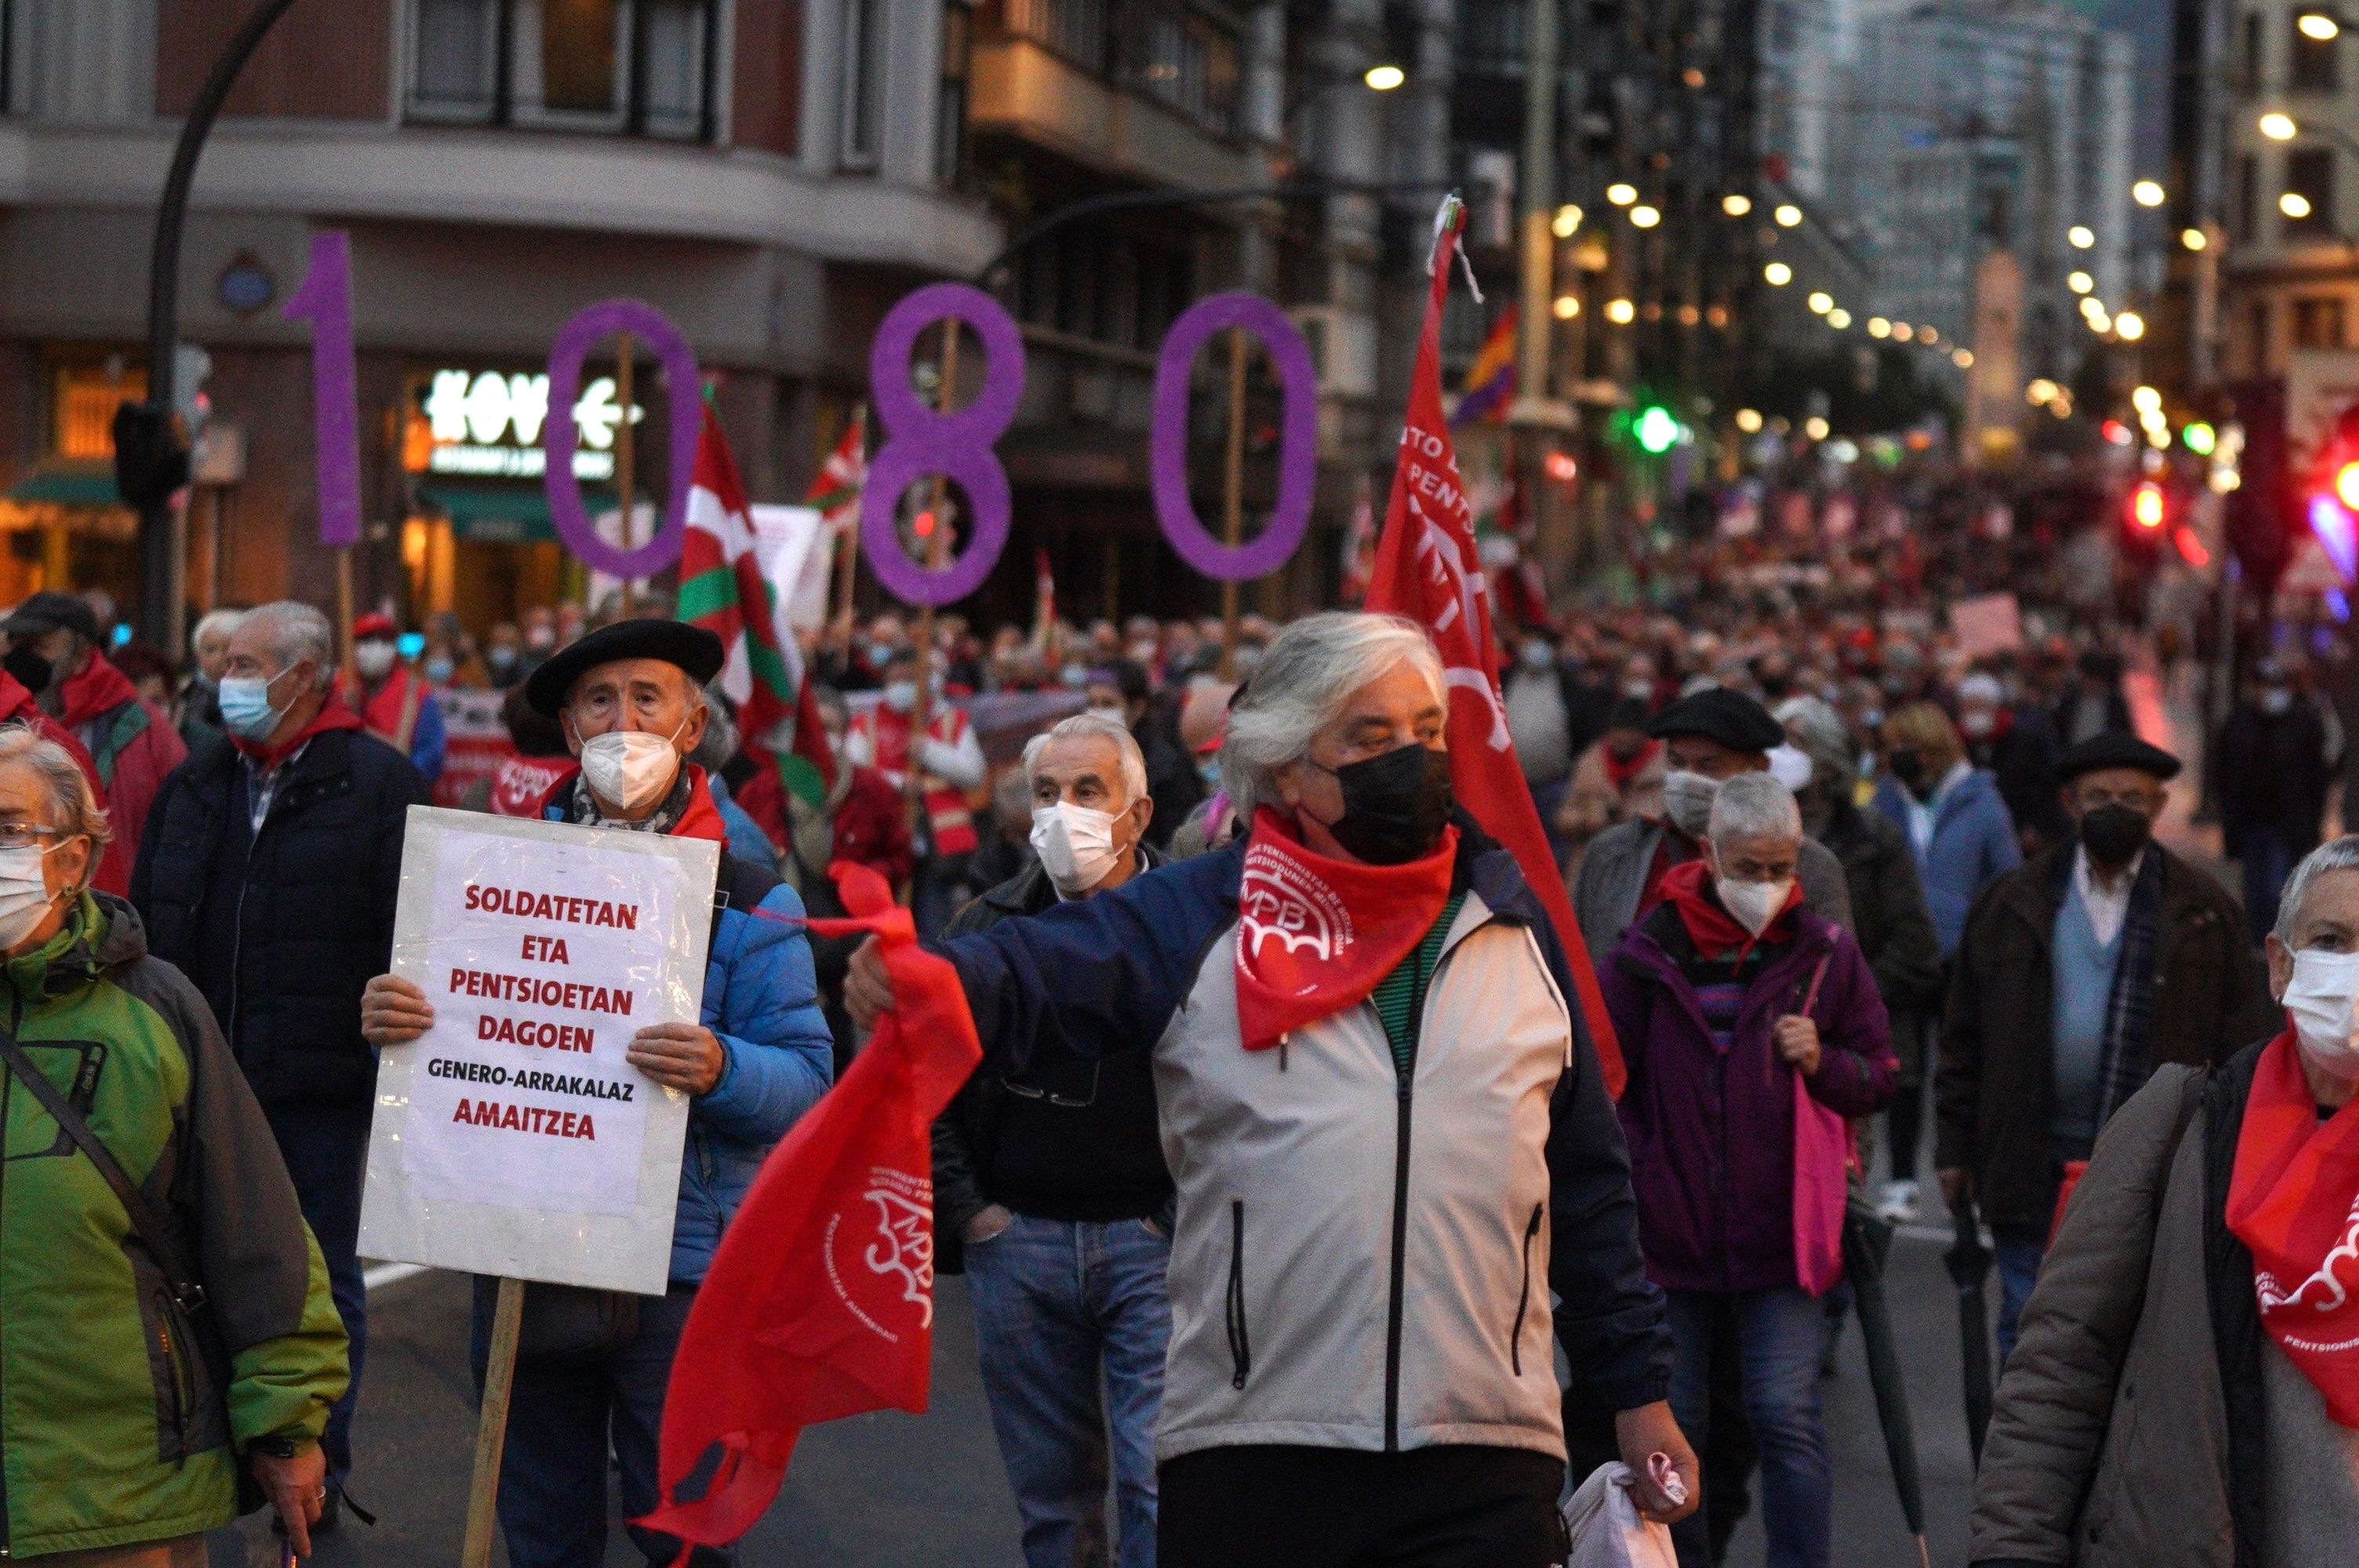 Los pensionistas vascos siguen su lucha con manifestaciones este sábado 15 en País Vasco y Navarra